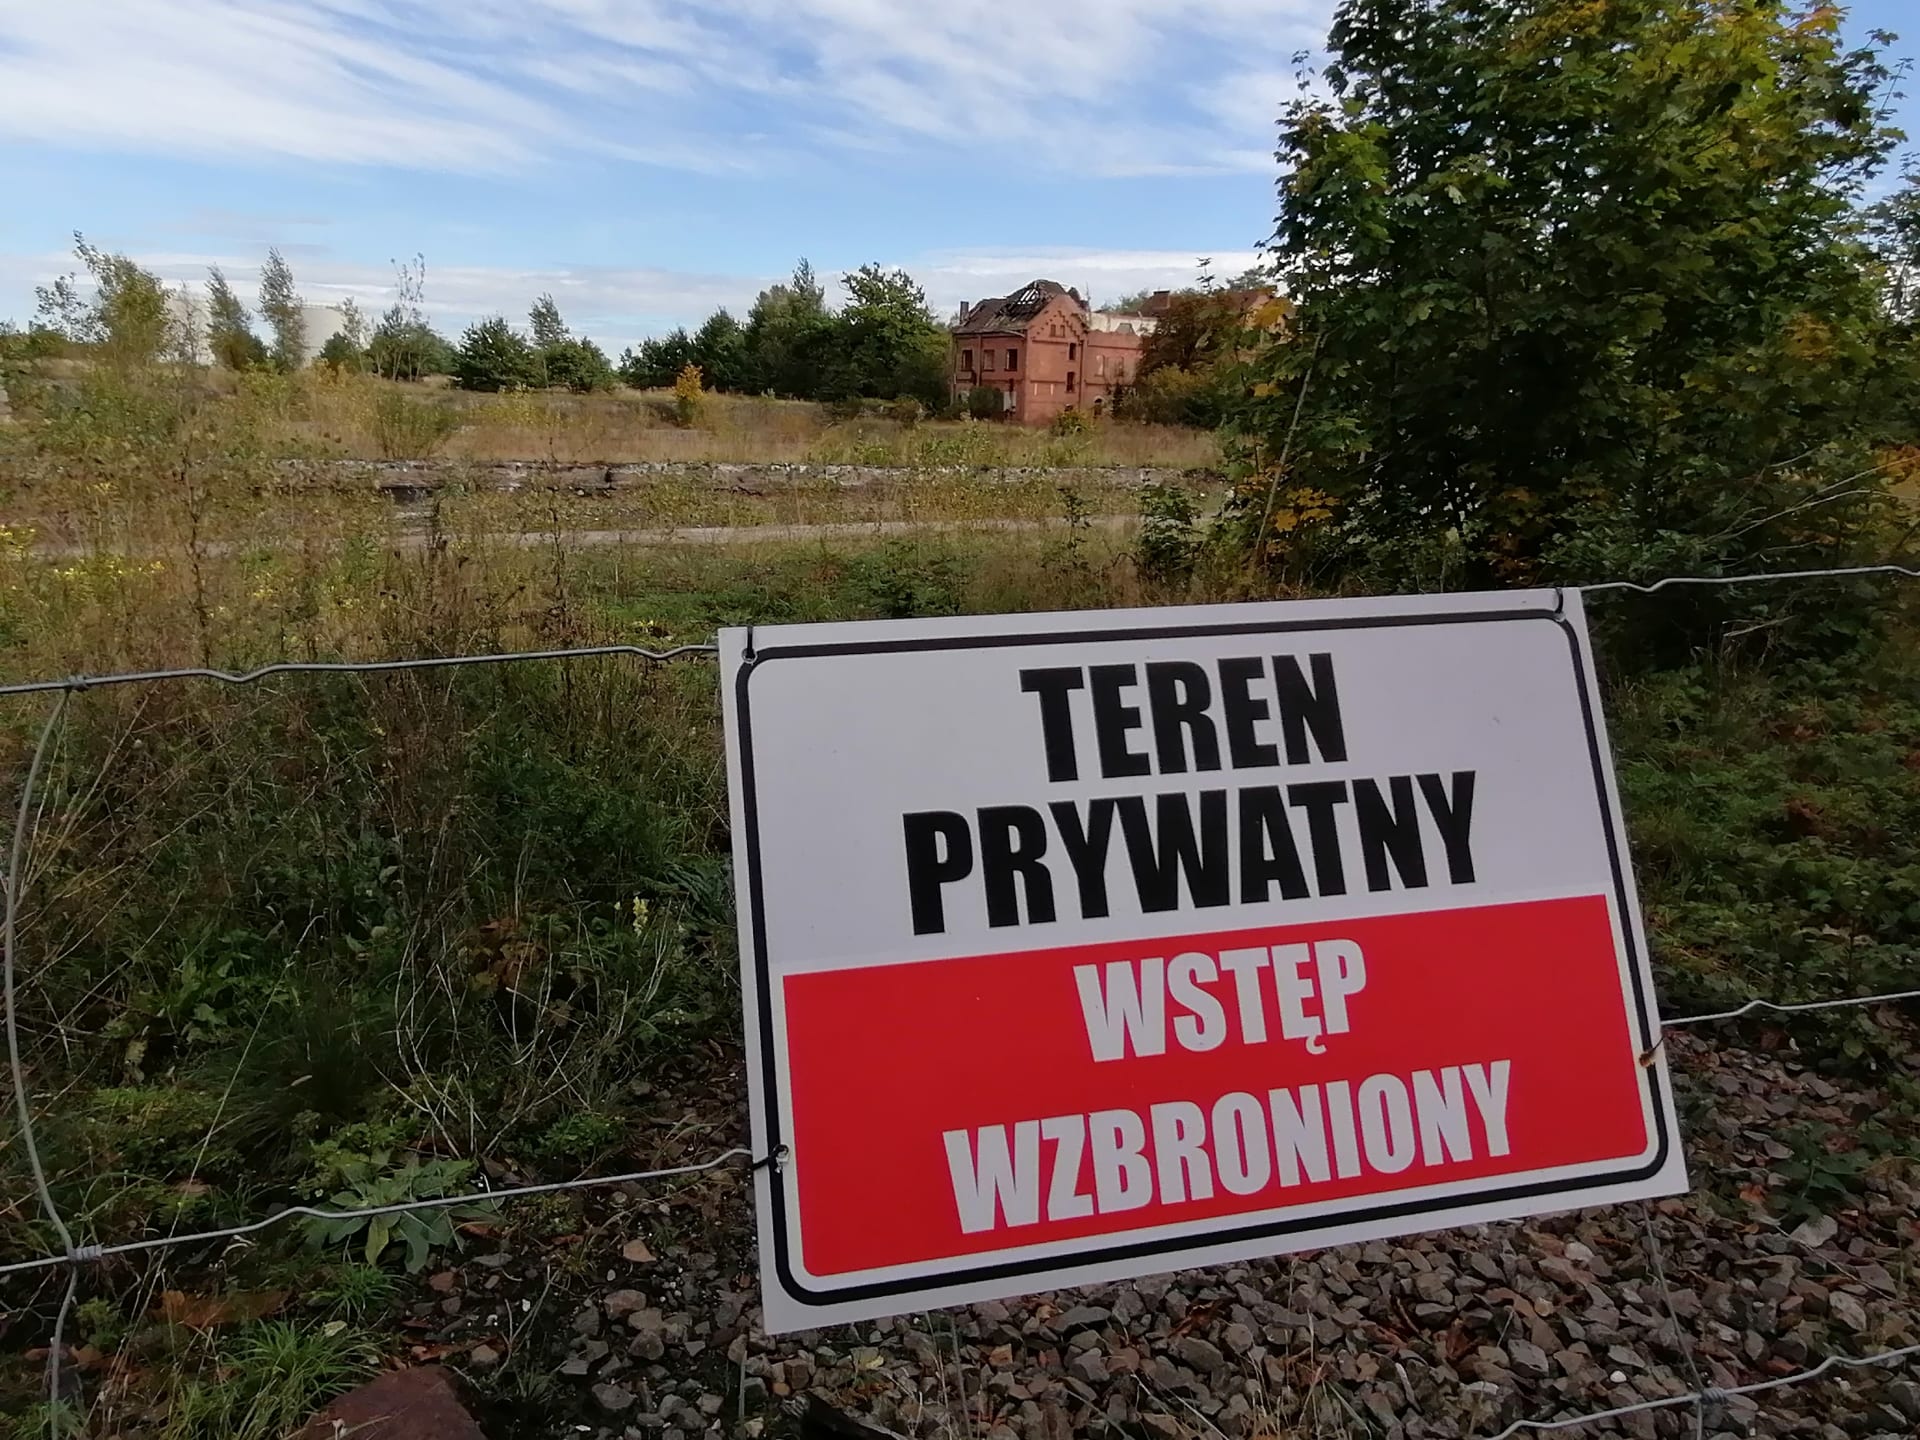 Přístav Kędzierzyn-Koźle, děravé oplocení areálu